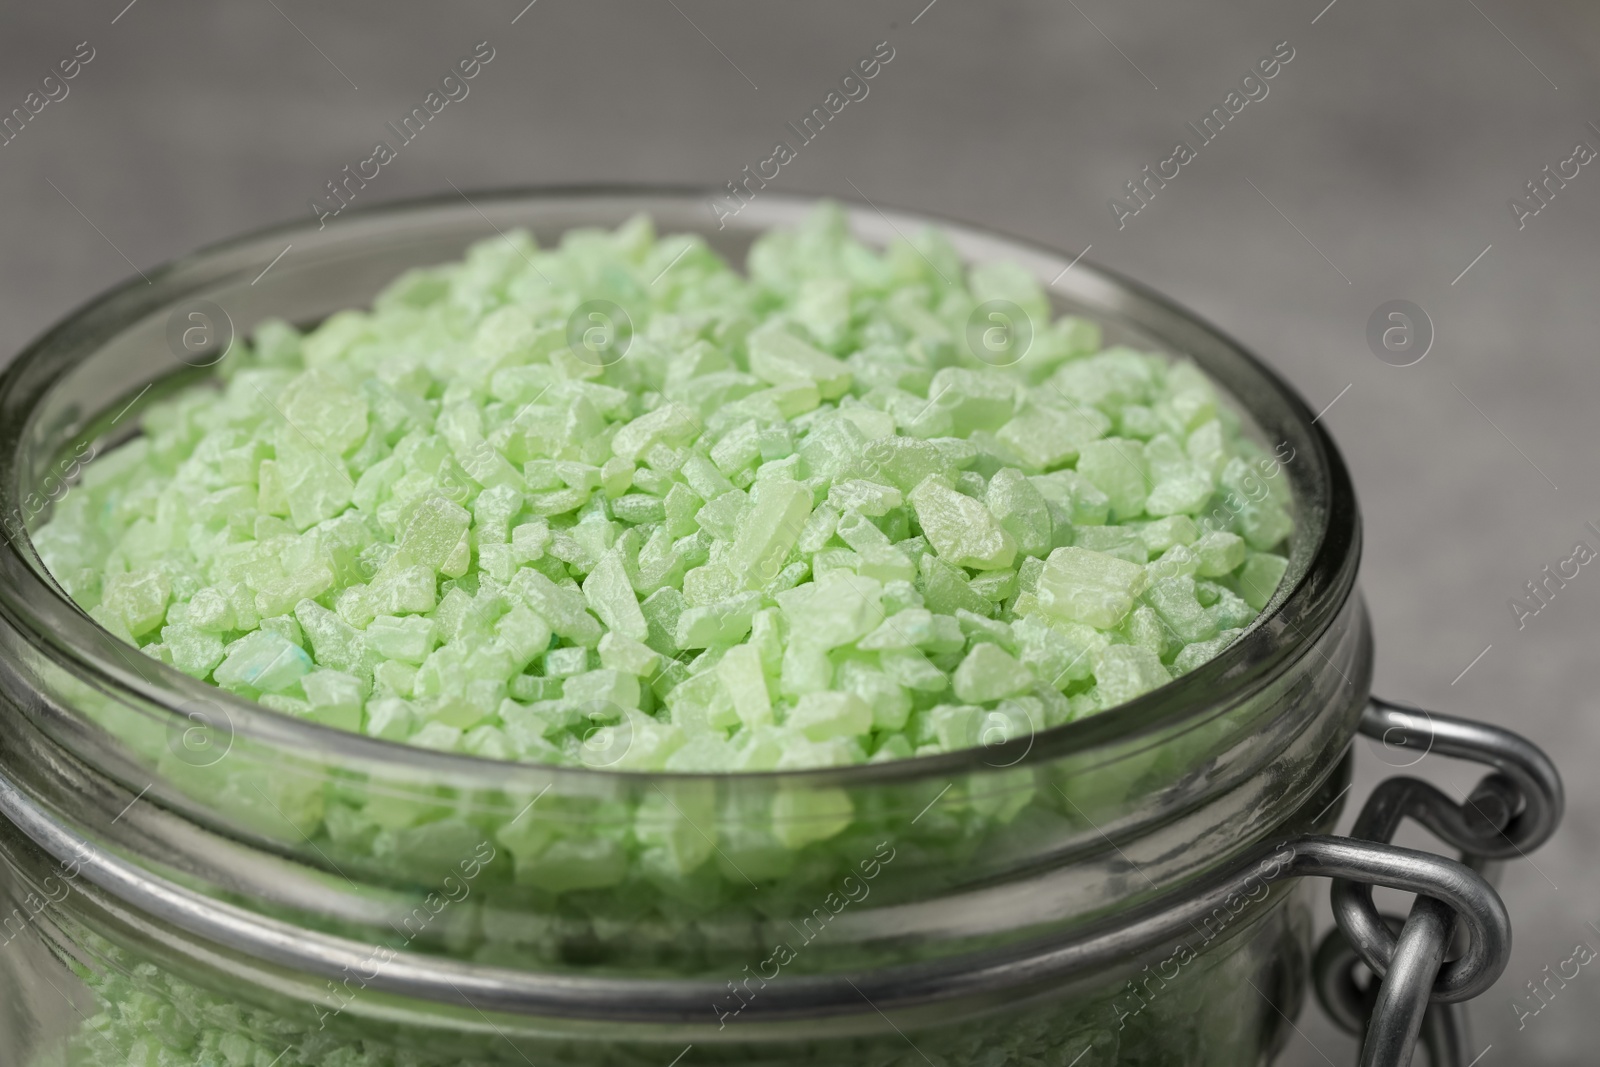 Photo of Jar with light green sea salt, closeup view